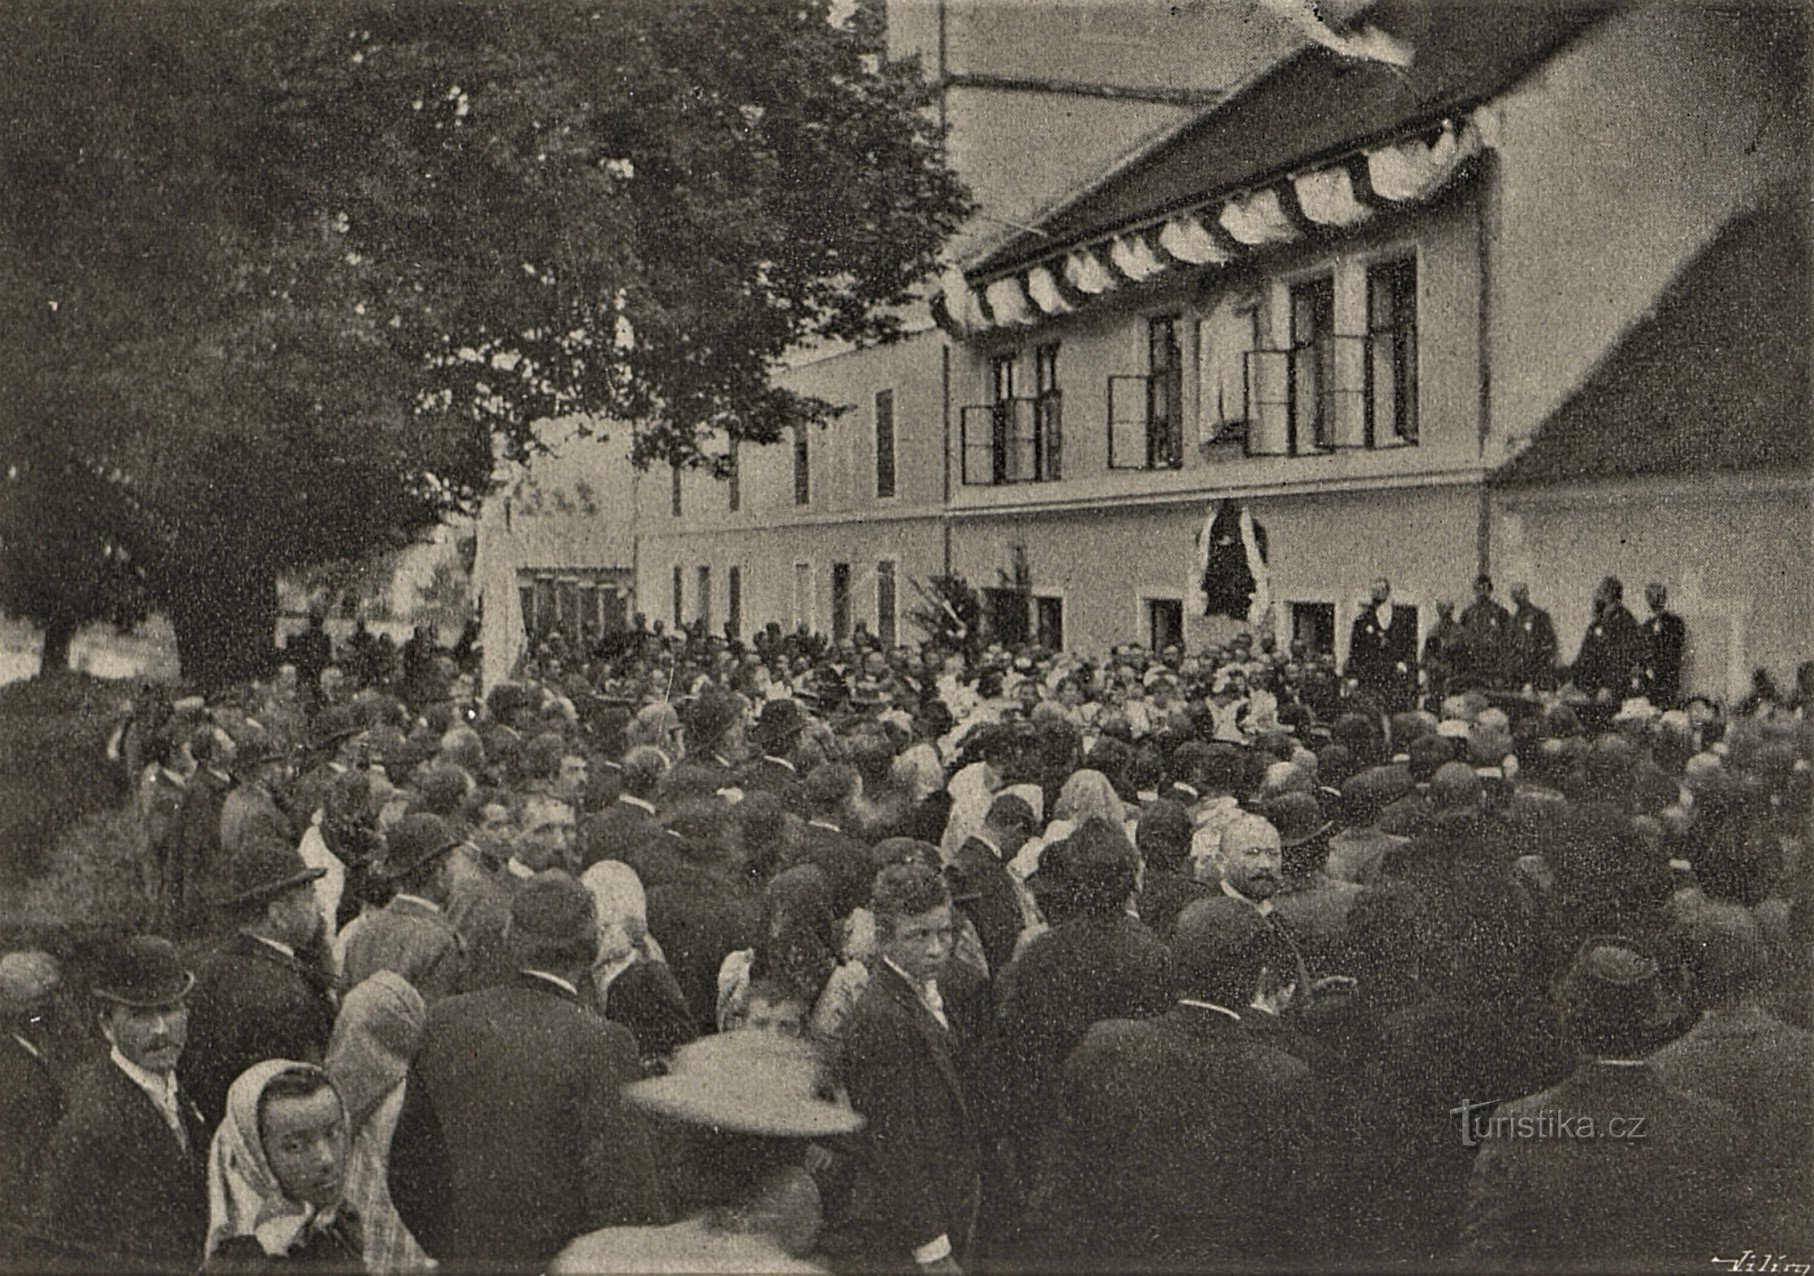 纪念牌匾 JUDr 的揭幕仪式。 致朱利叶斯·格雷格罗（2.10.1898 年 XNUMX 月 XNUMX 日）